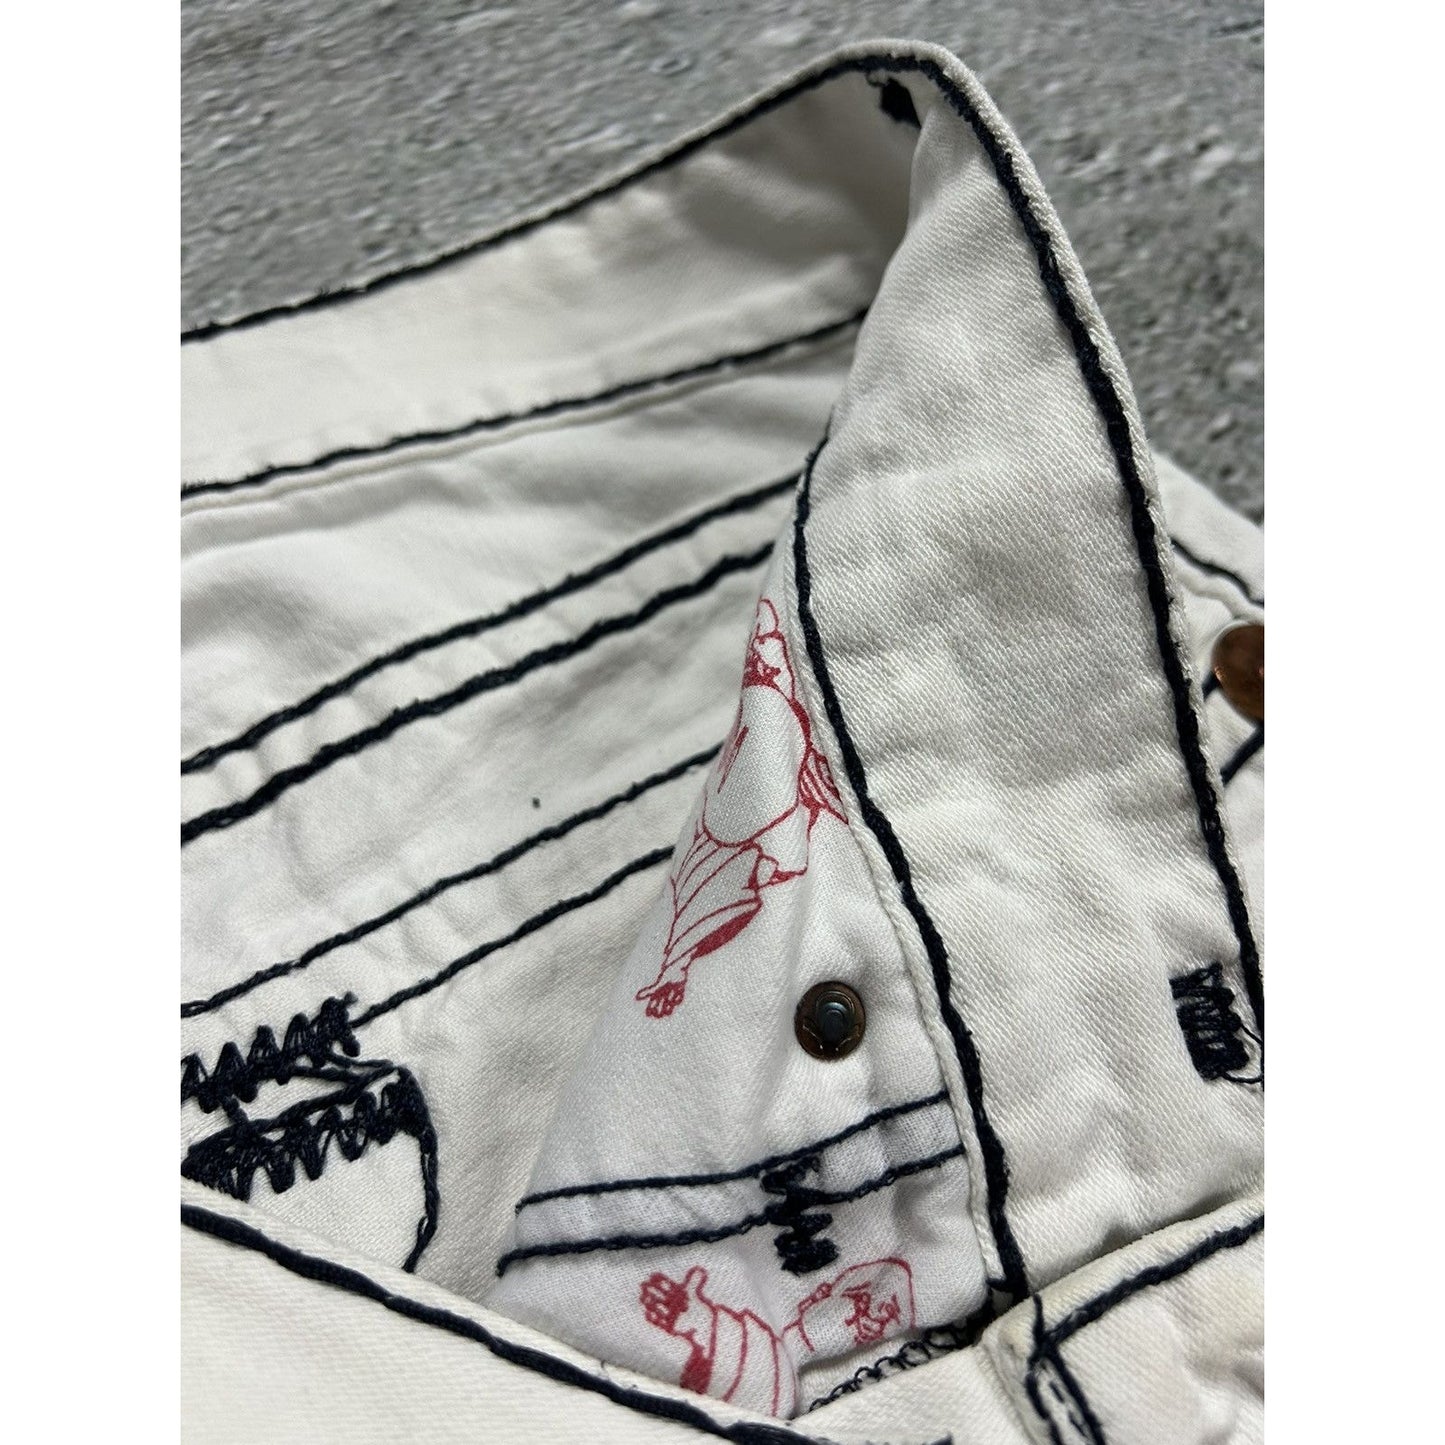 True Religion jorts vintage white denim shorts black stitch